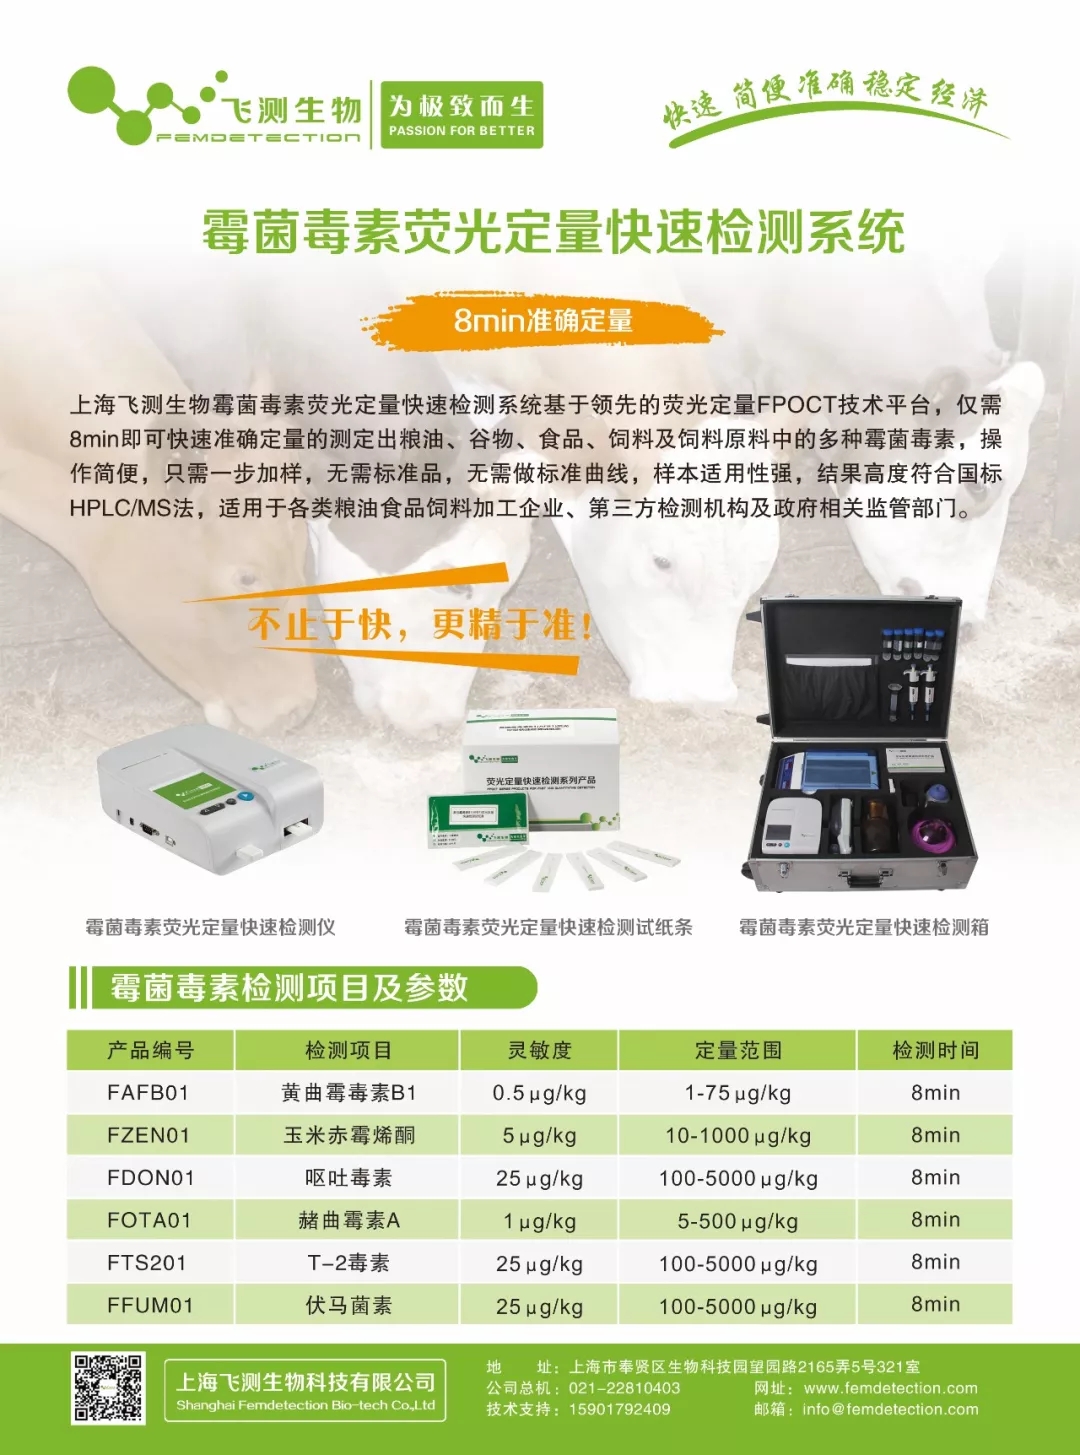 上海飞测生物基于荧光定量FPOCT技术平台